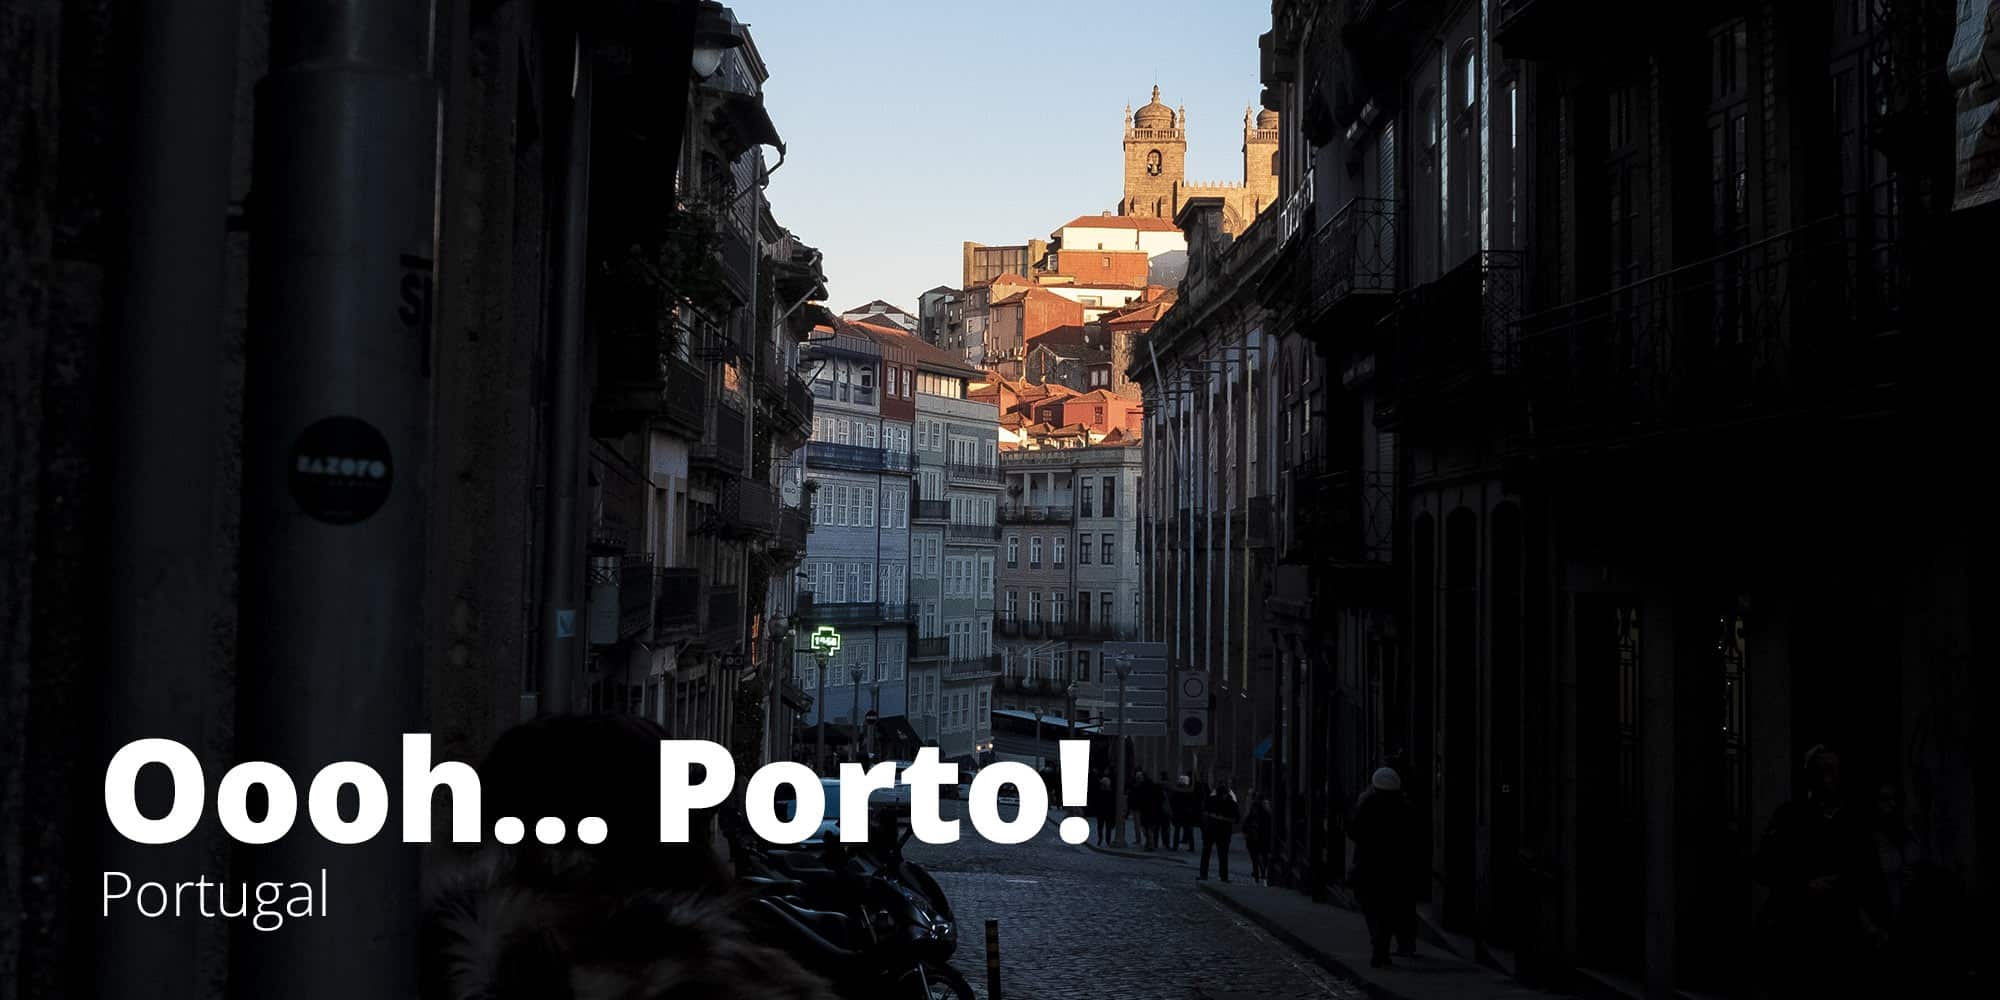 Fotografía de un atardecer en el centro histórico de la ciudad de Oporto, Portugal